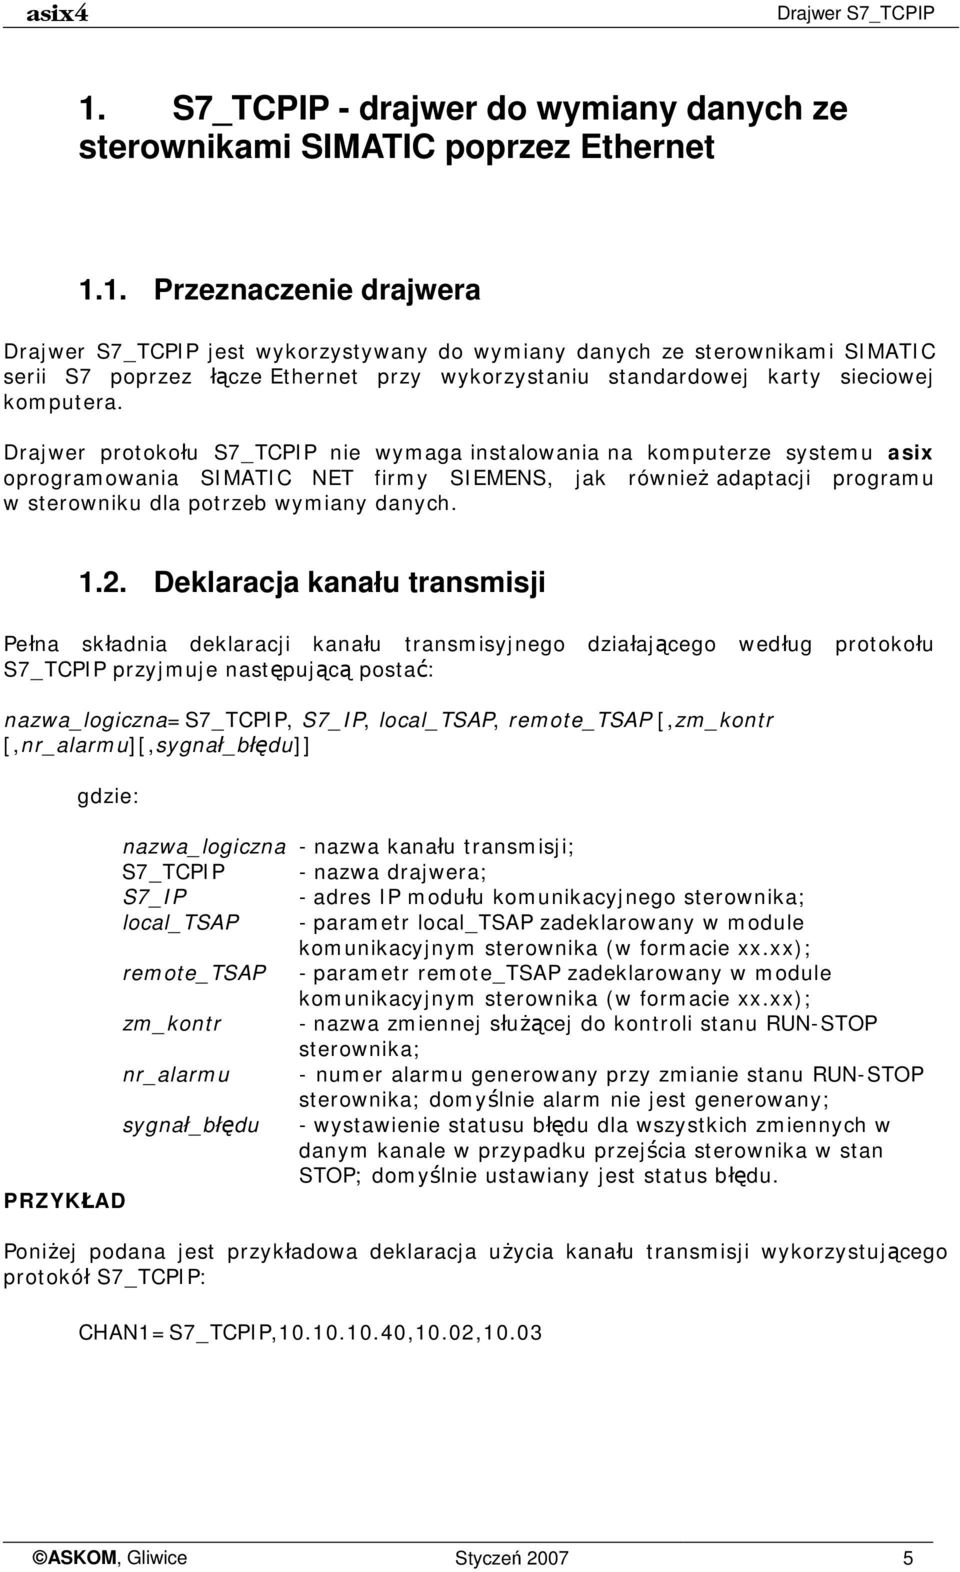 1. Przeznaczenie drajwera Drajwer S7_TCPIP jest wykorzystywany do wymiany danych ze sterownikami SIMATIC serii S7 poprzez łącze Ethernet przy wykorzystaniu standardowej karty sieciowej komputera.